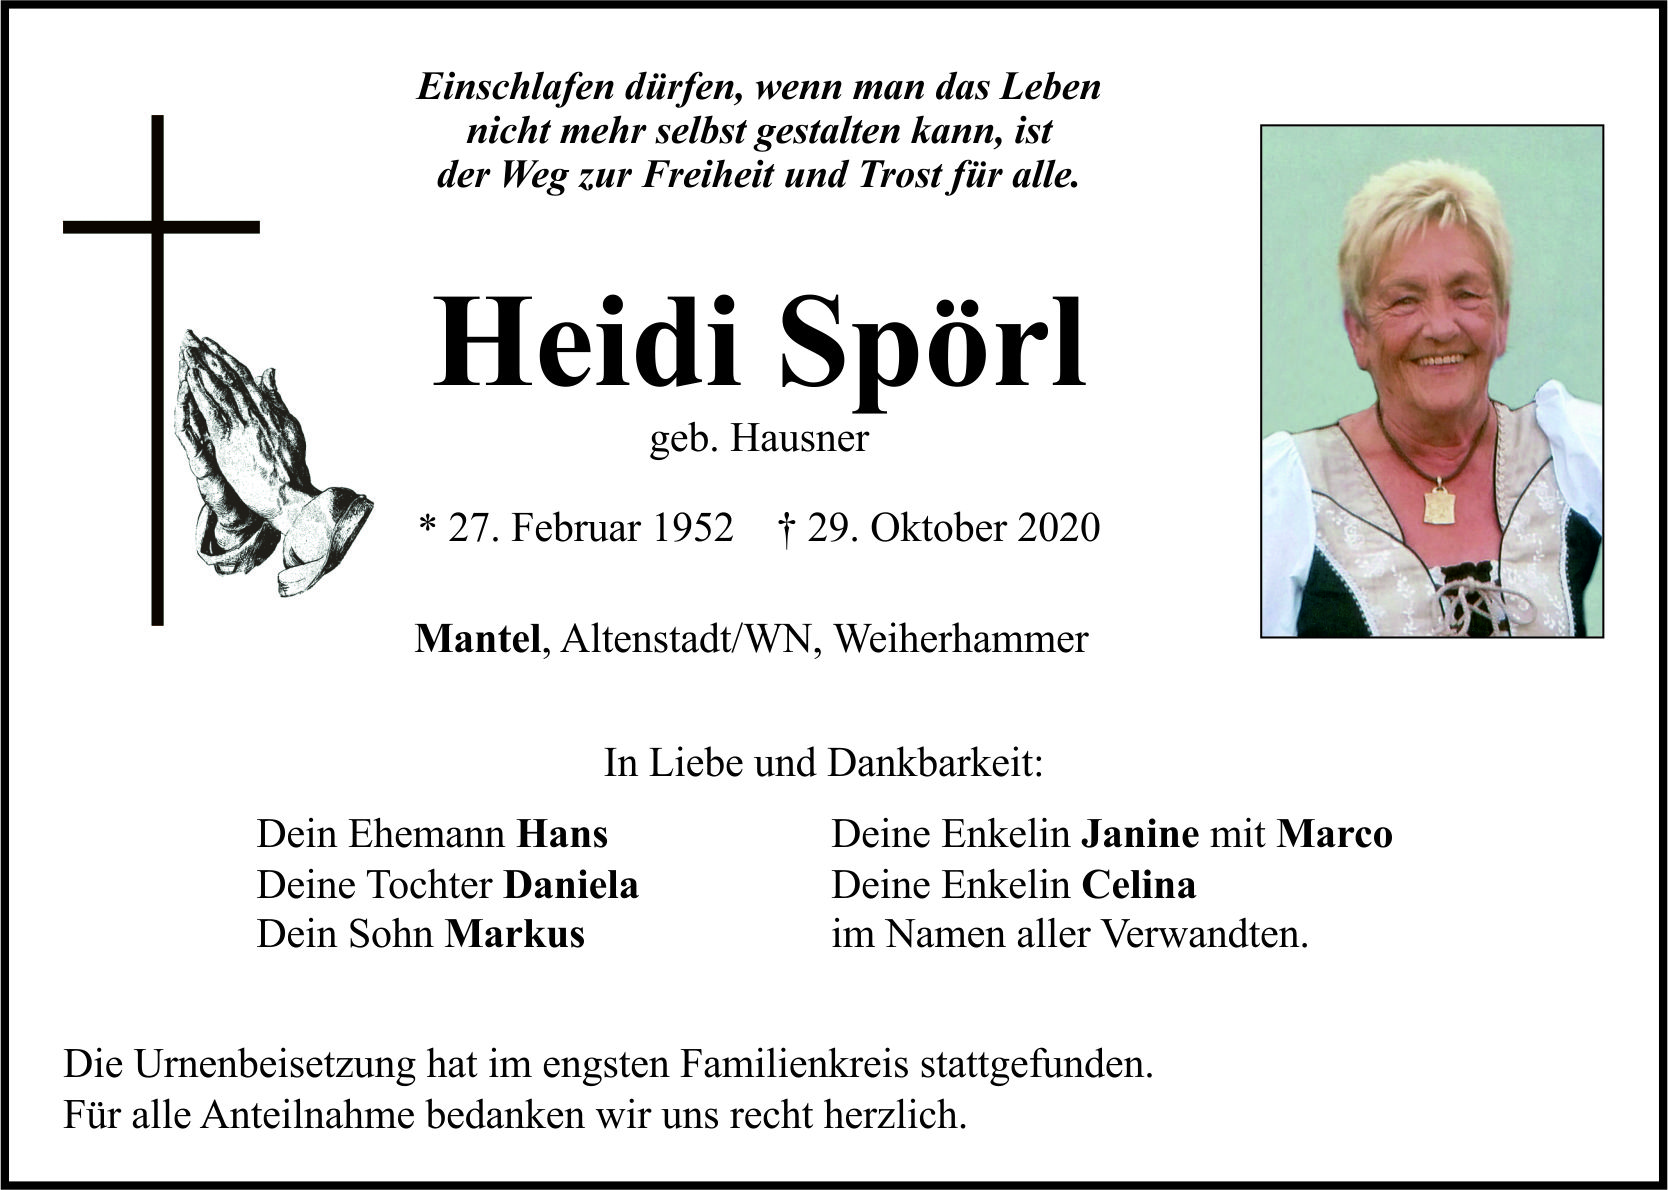 Traueranzeige Heidi Spörl, Mantel